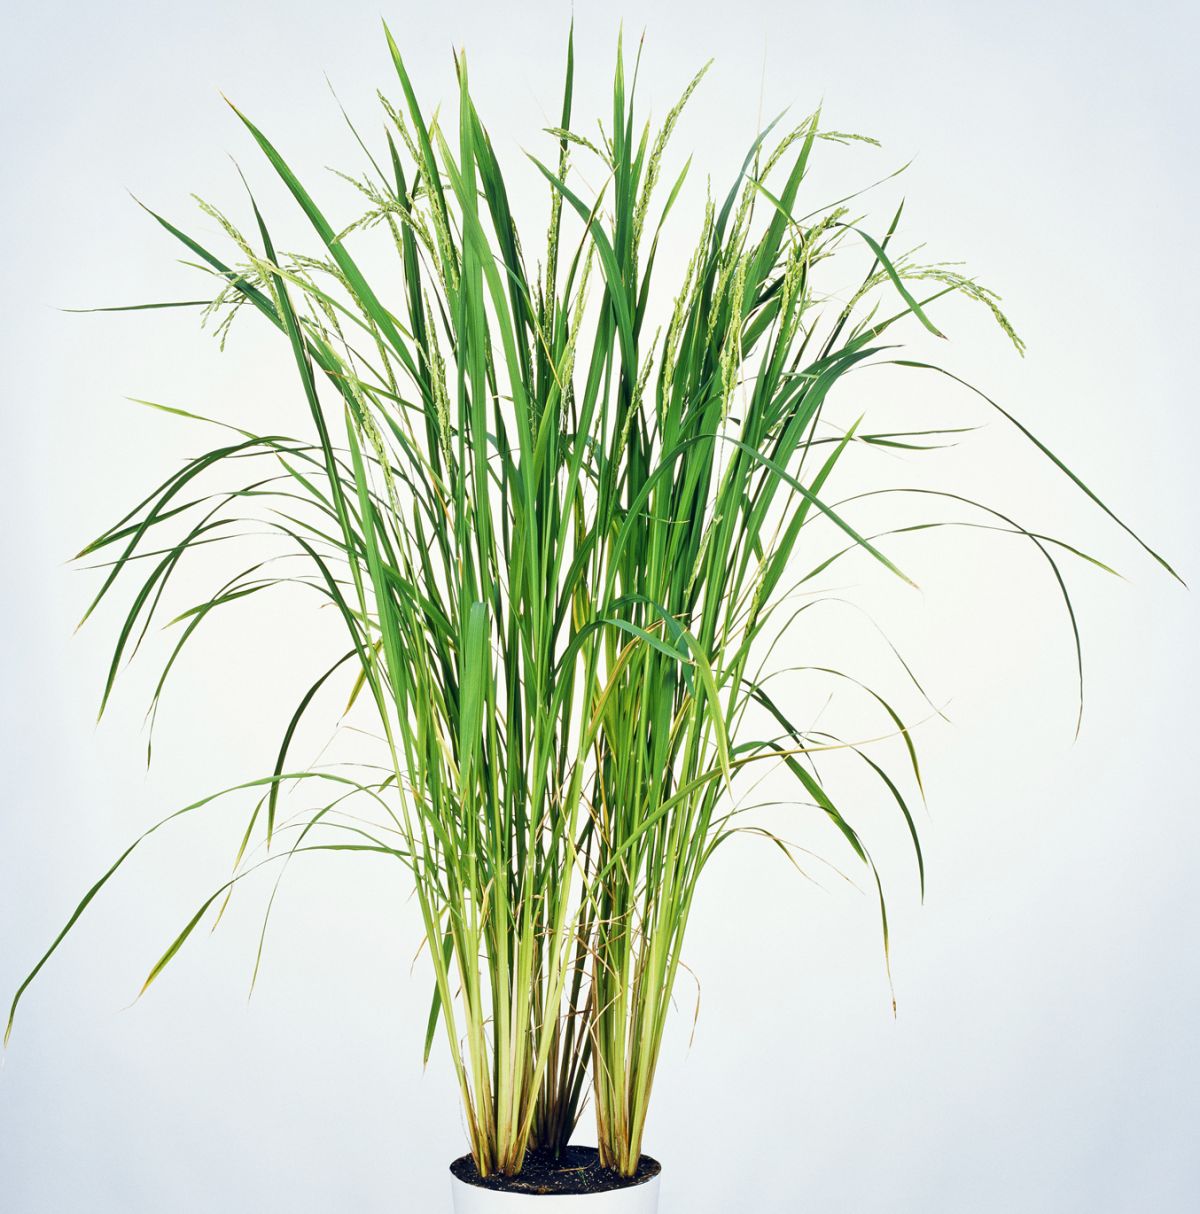 Wie die meisten Pflanzen, betreibt auch Reis die sogenannte C3-Photosynthese. Das ist die älteste und bei gemäßigten Wetterbedingungen auch die effektivste Form der Kohlendioxidfixierung.